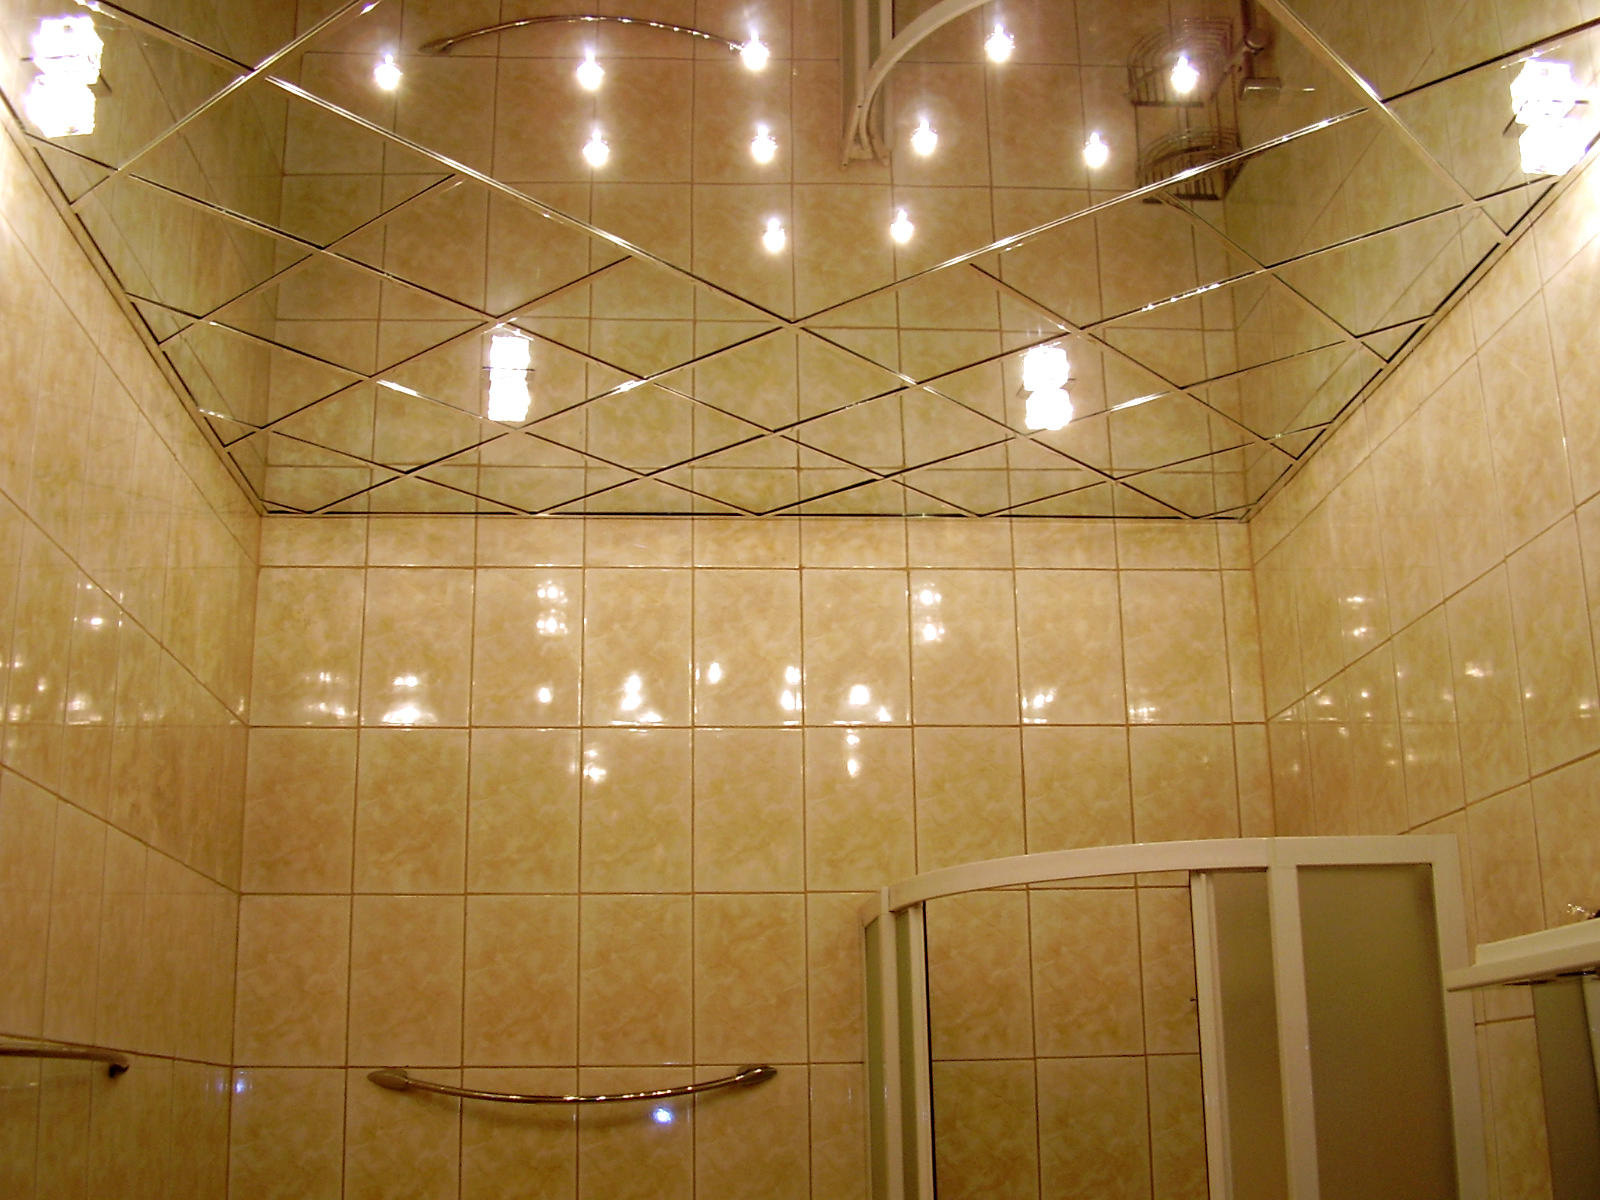 Прежде чем оформлять ванную зеркальным потолком, ознакомьтесь с его преимуществами и недостатками